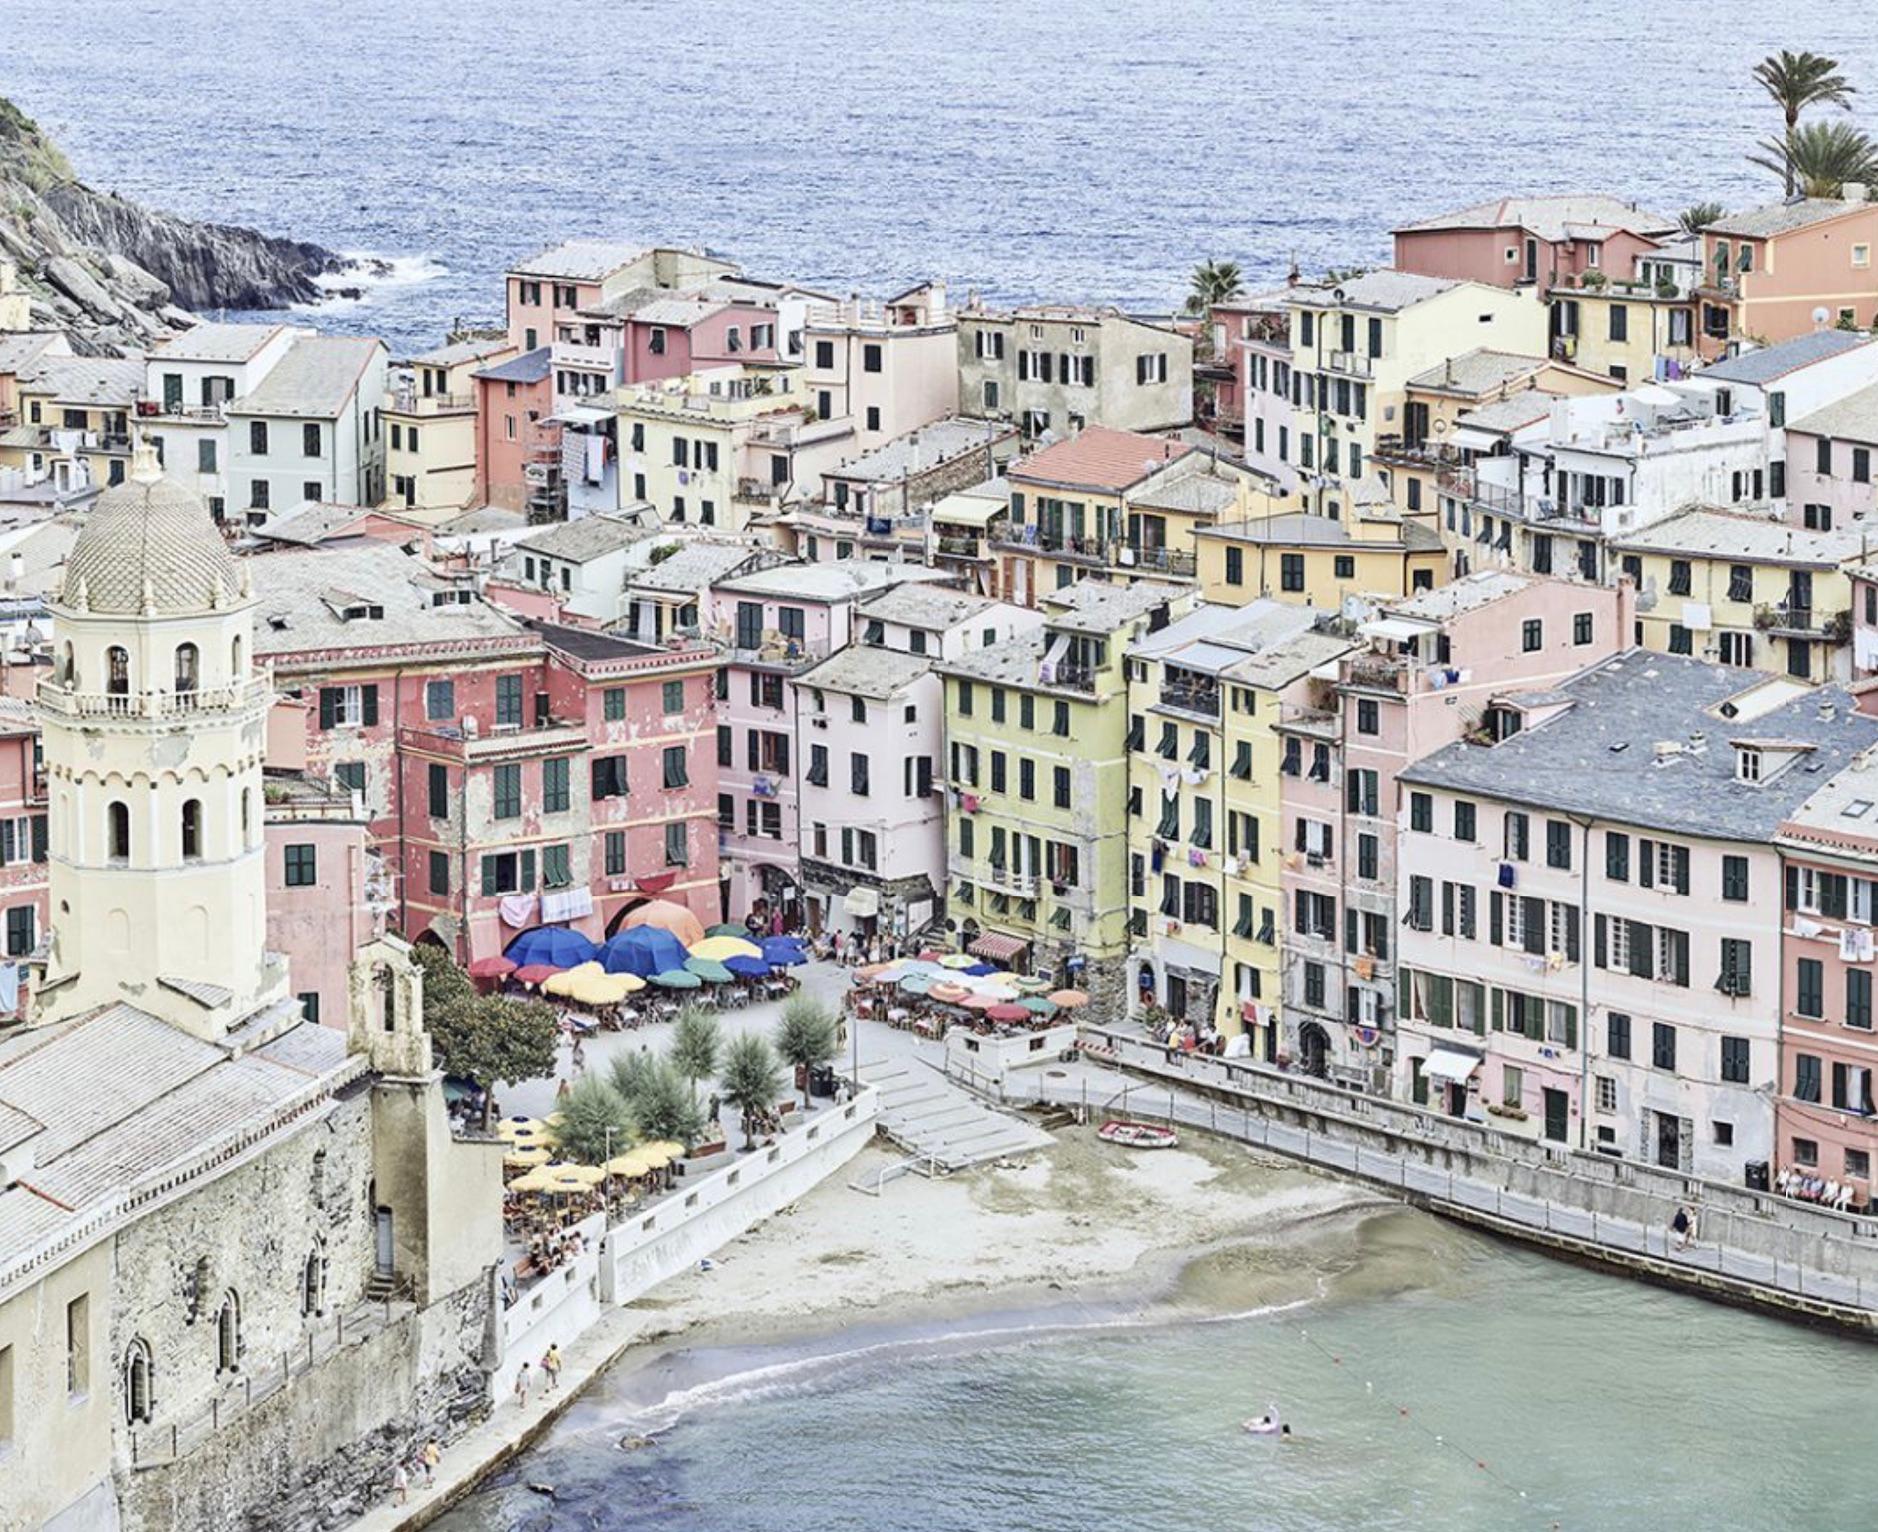 David Burdeny Landscape Photograph - Cinque Terre, Italy 2019